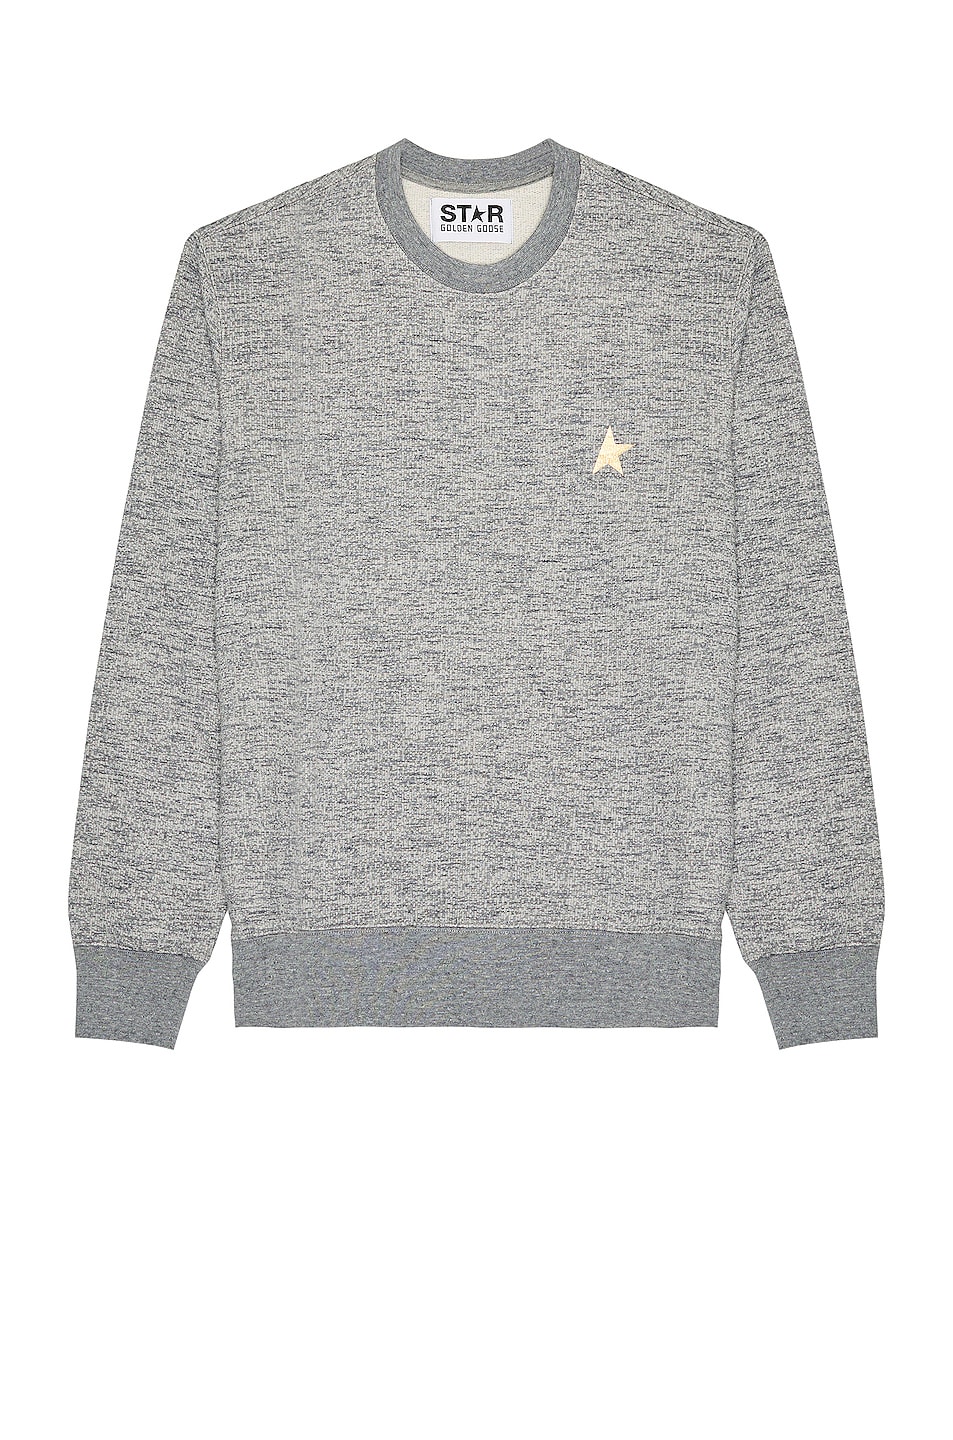 Image 1 of Golden Goose Star Sweatshirt in Medium Grey Melange & Gold